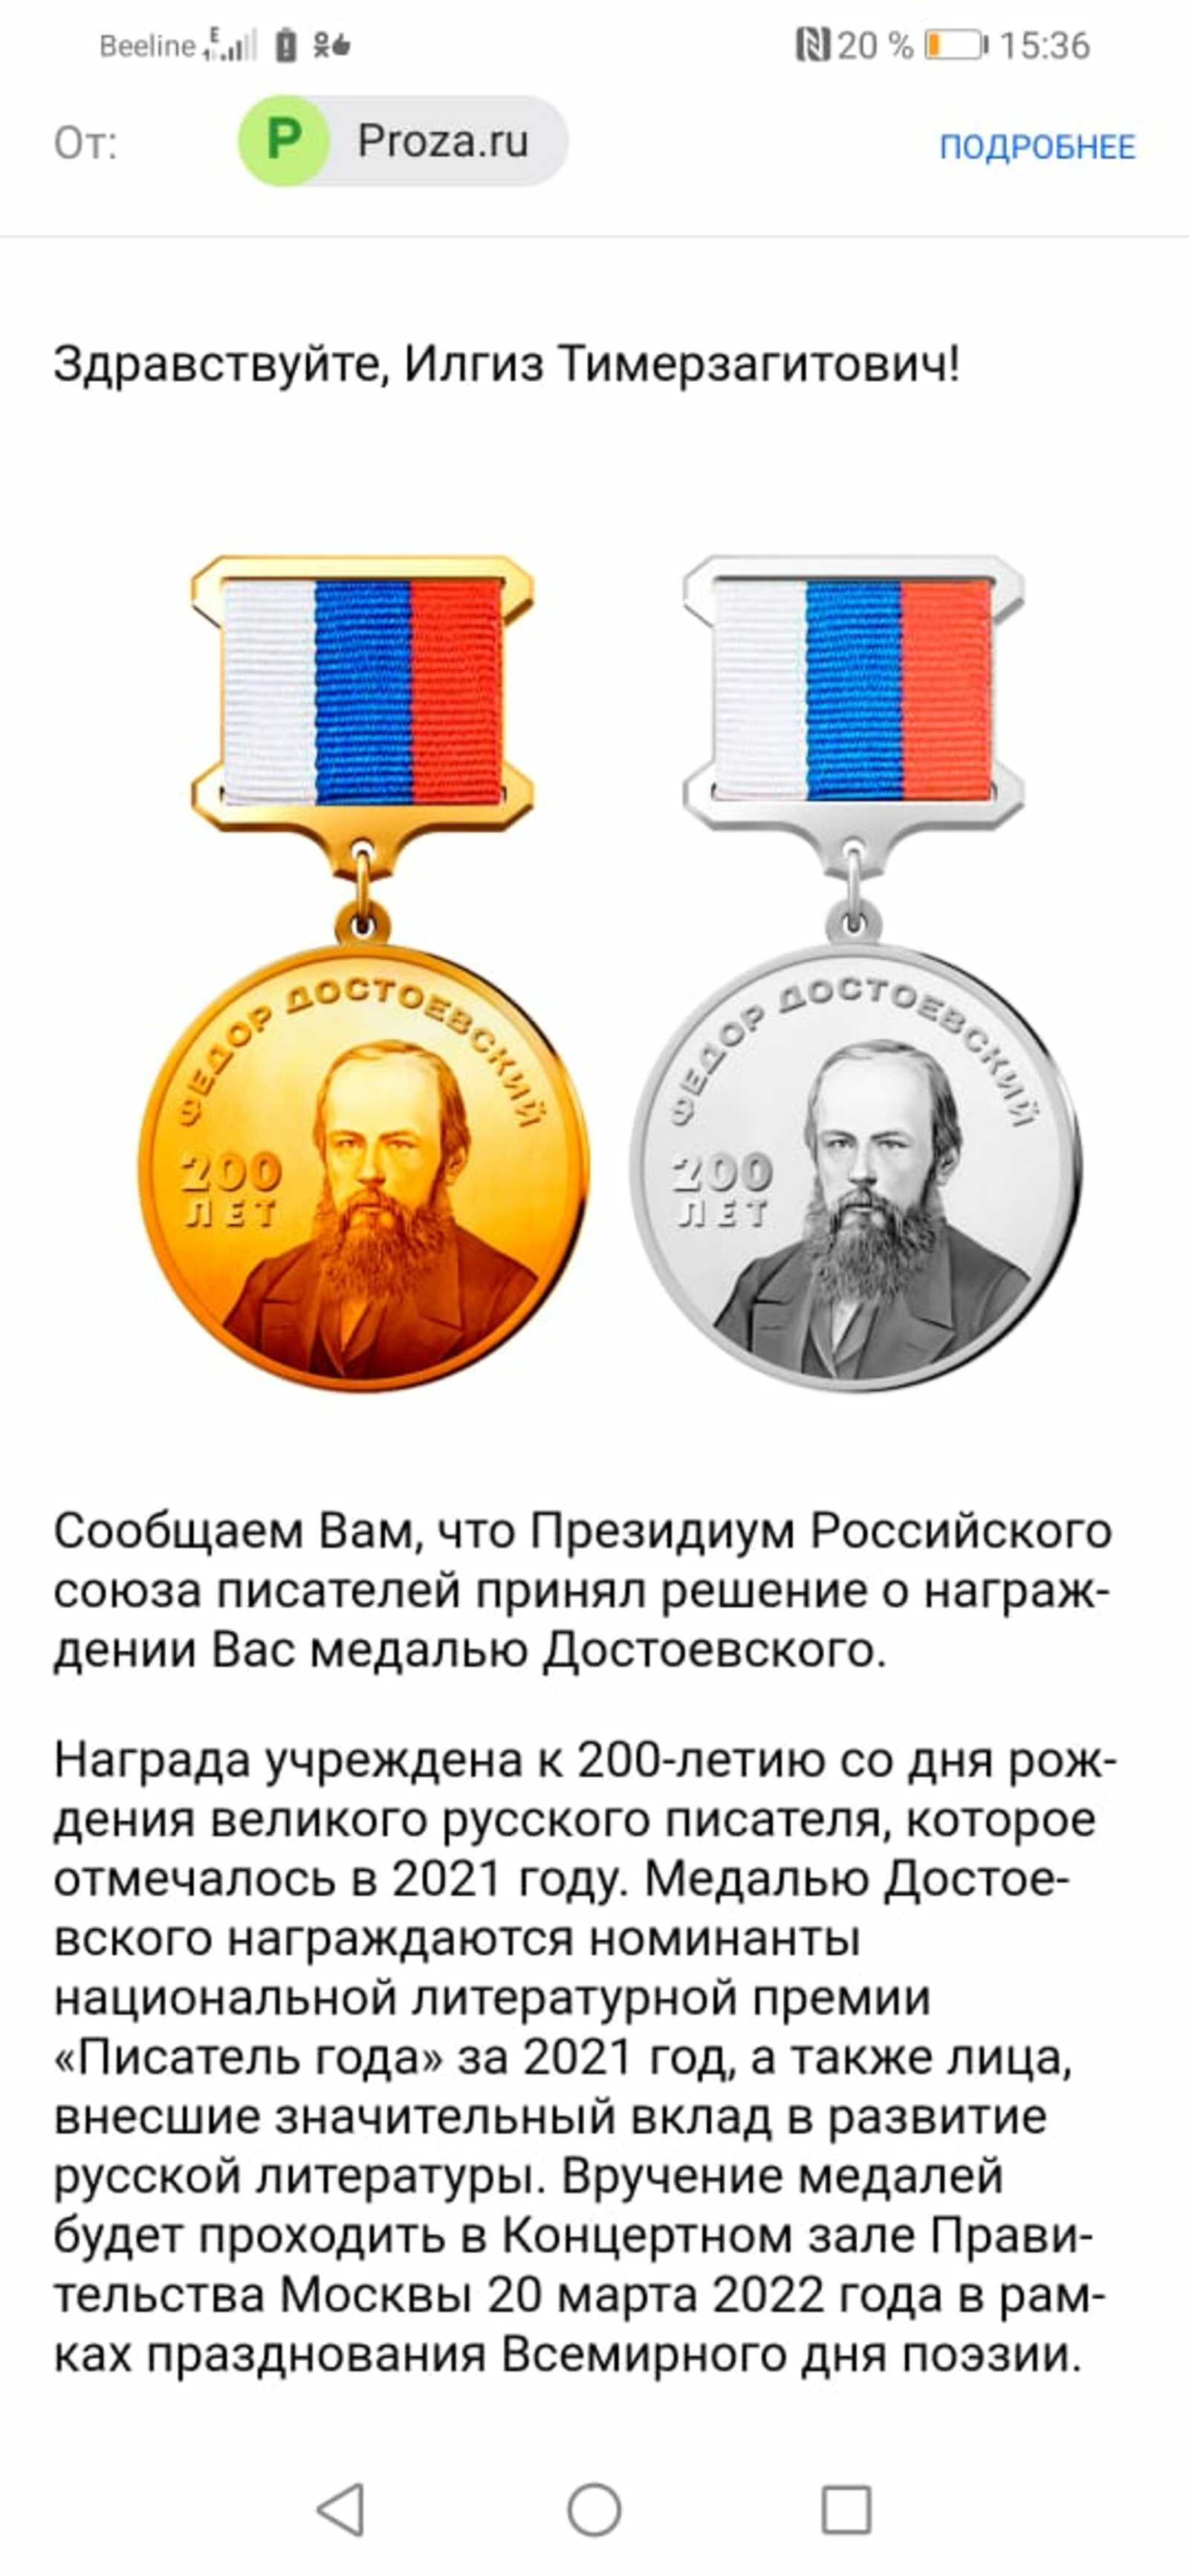 Илгиз Әхмәтовка – Достоевский медале